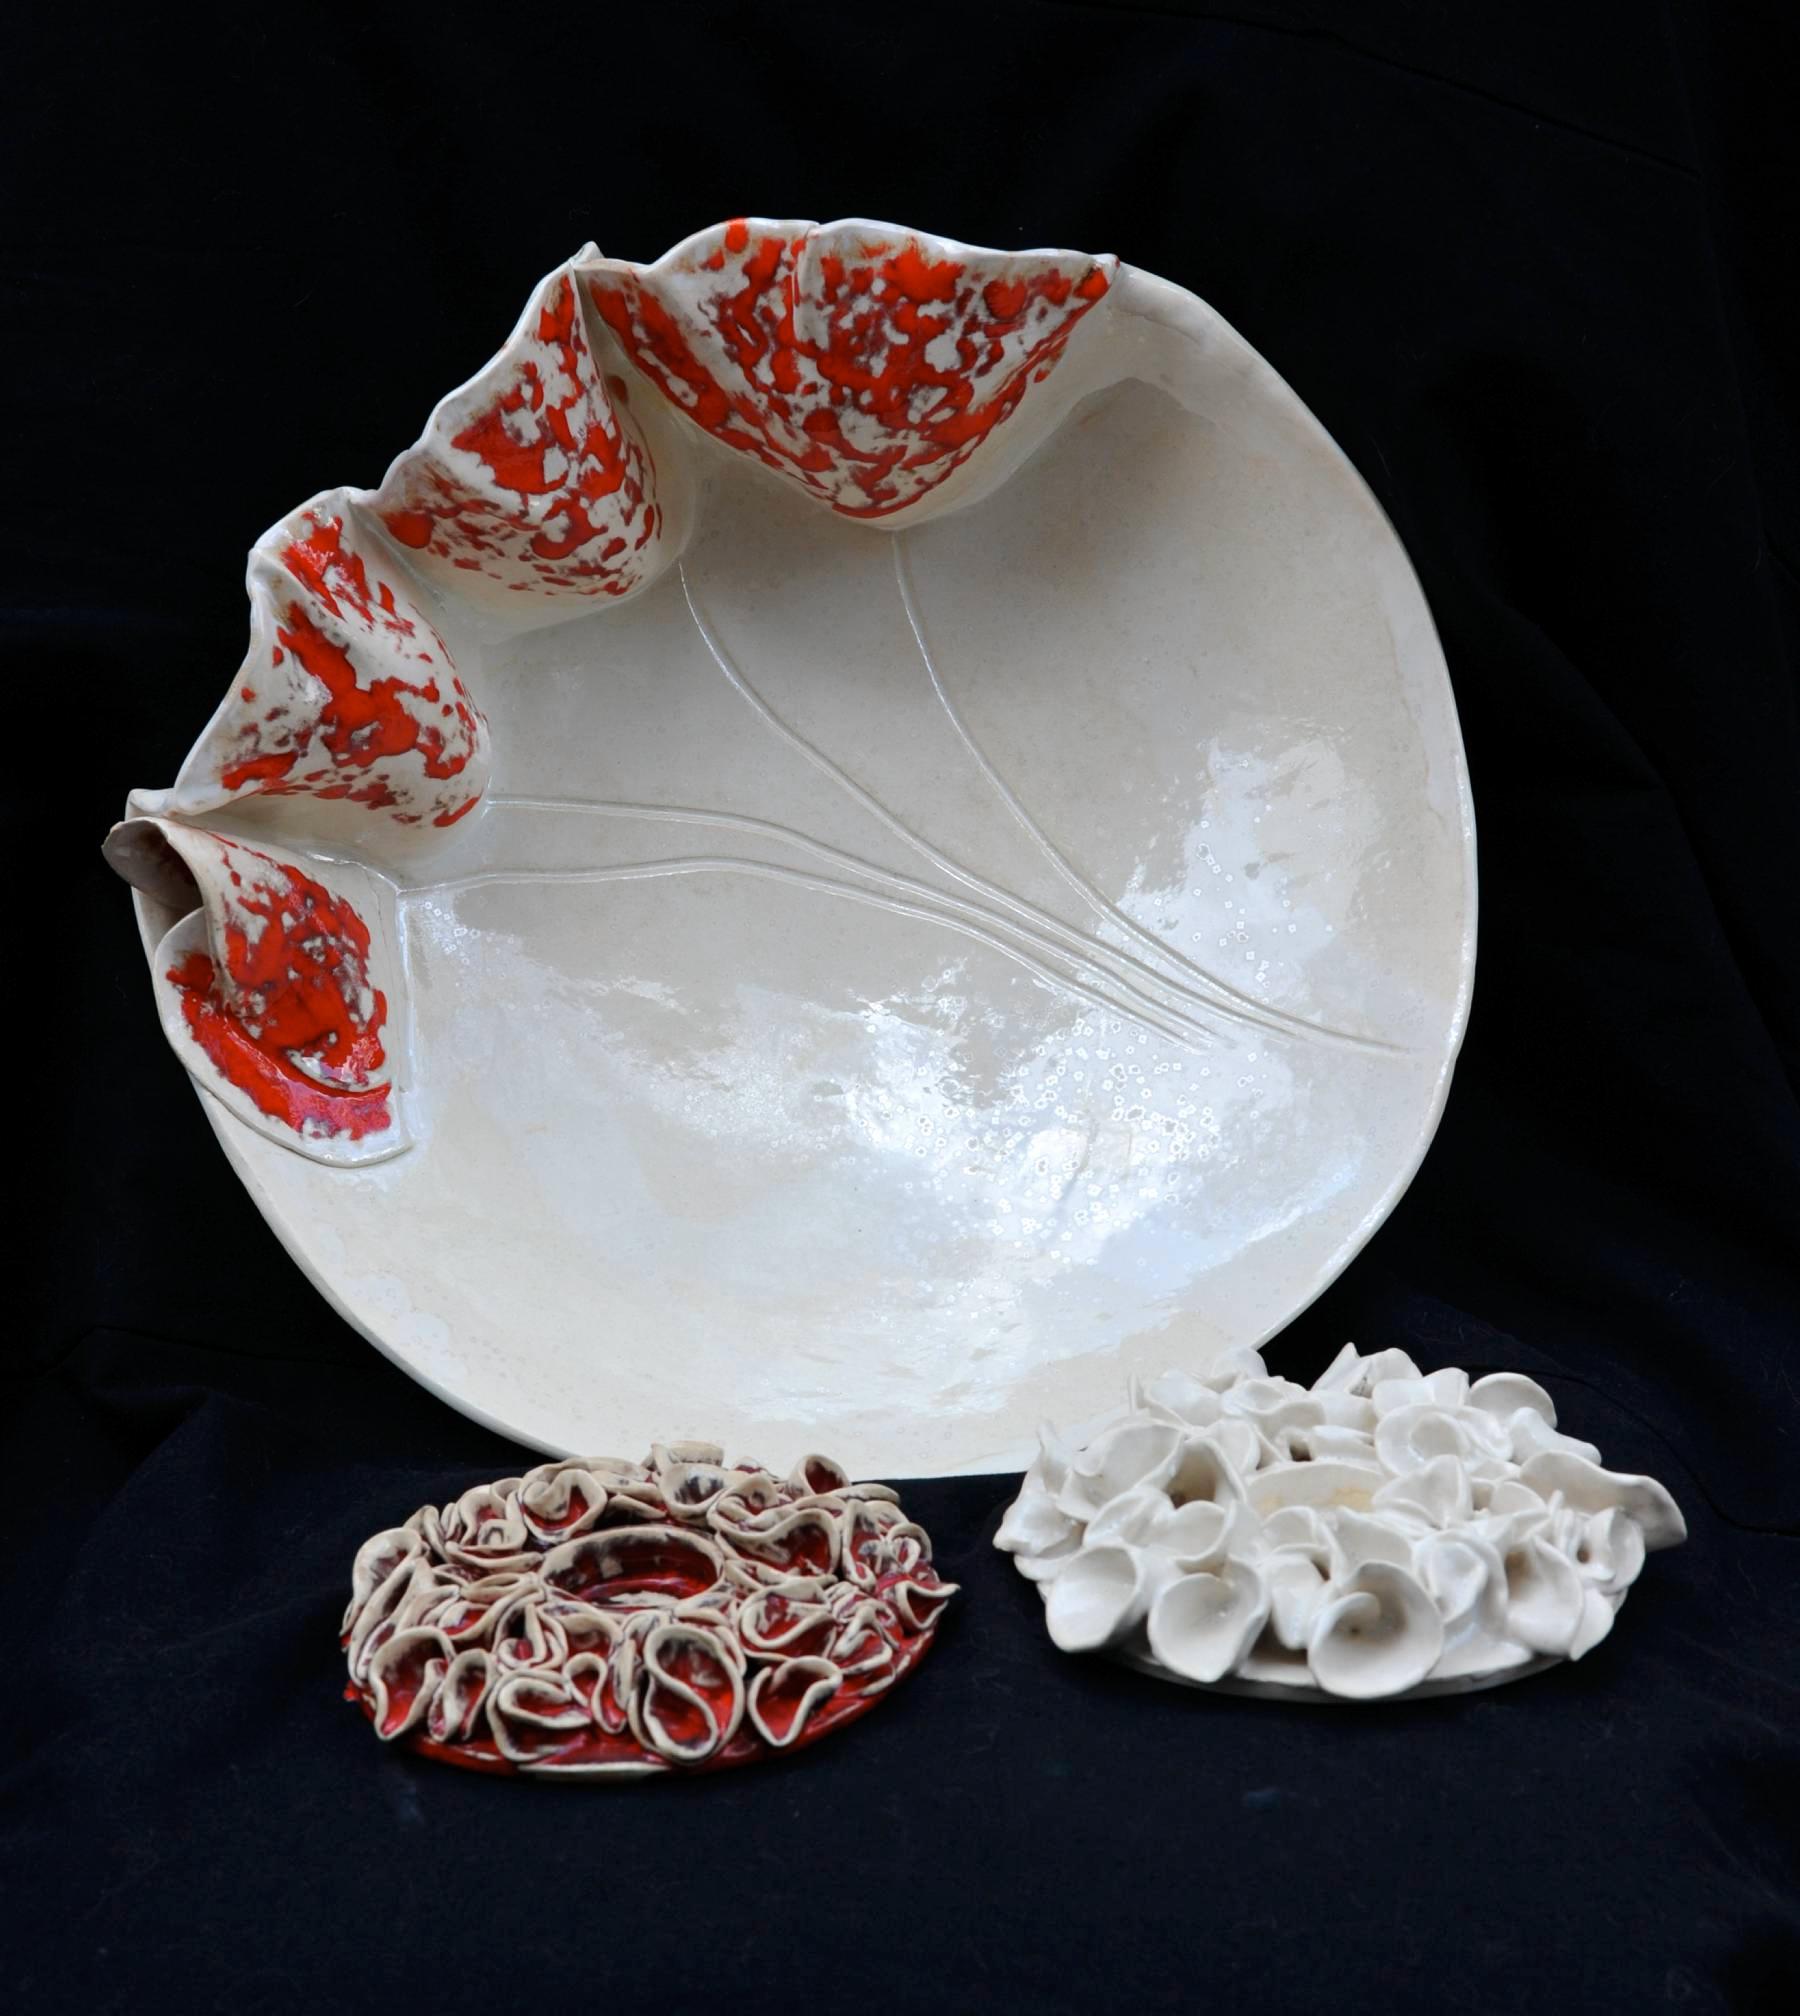 Pracownia ceramiki ceramika artystyczna łódź , Łódź,, łódzkie